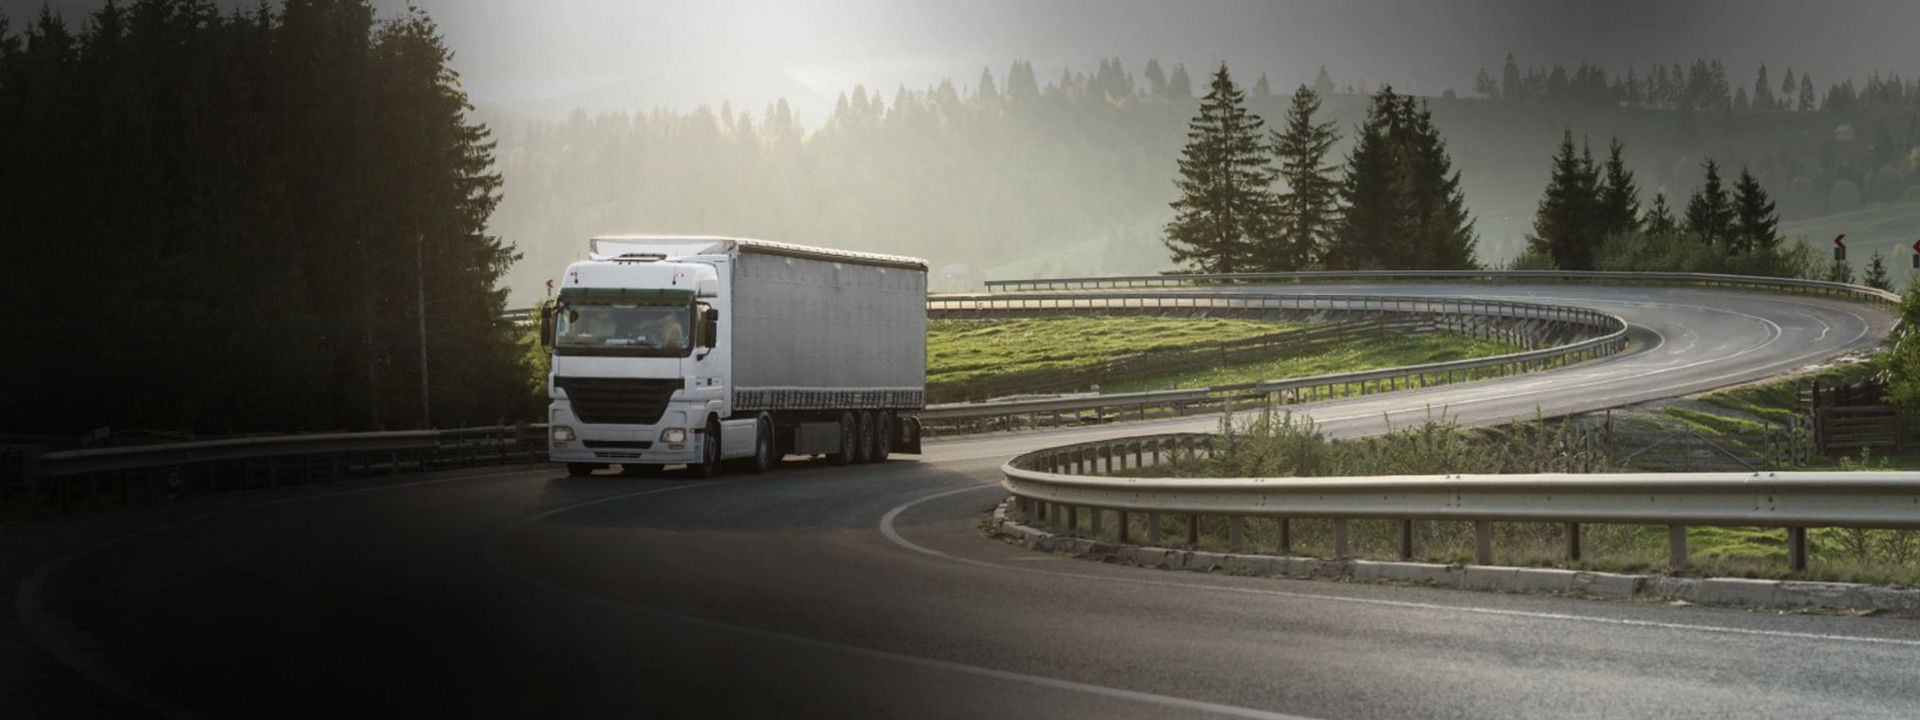 Deze afbeelding toont een truck voor internationaal transport met de veelzijdige Bridgestone-banden.